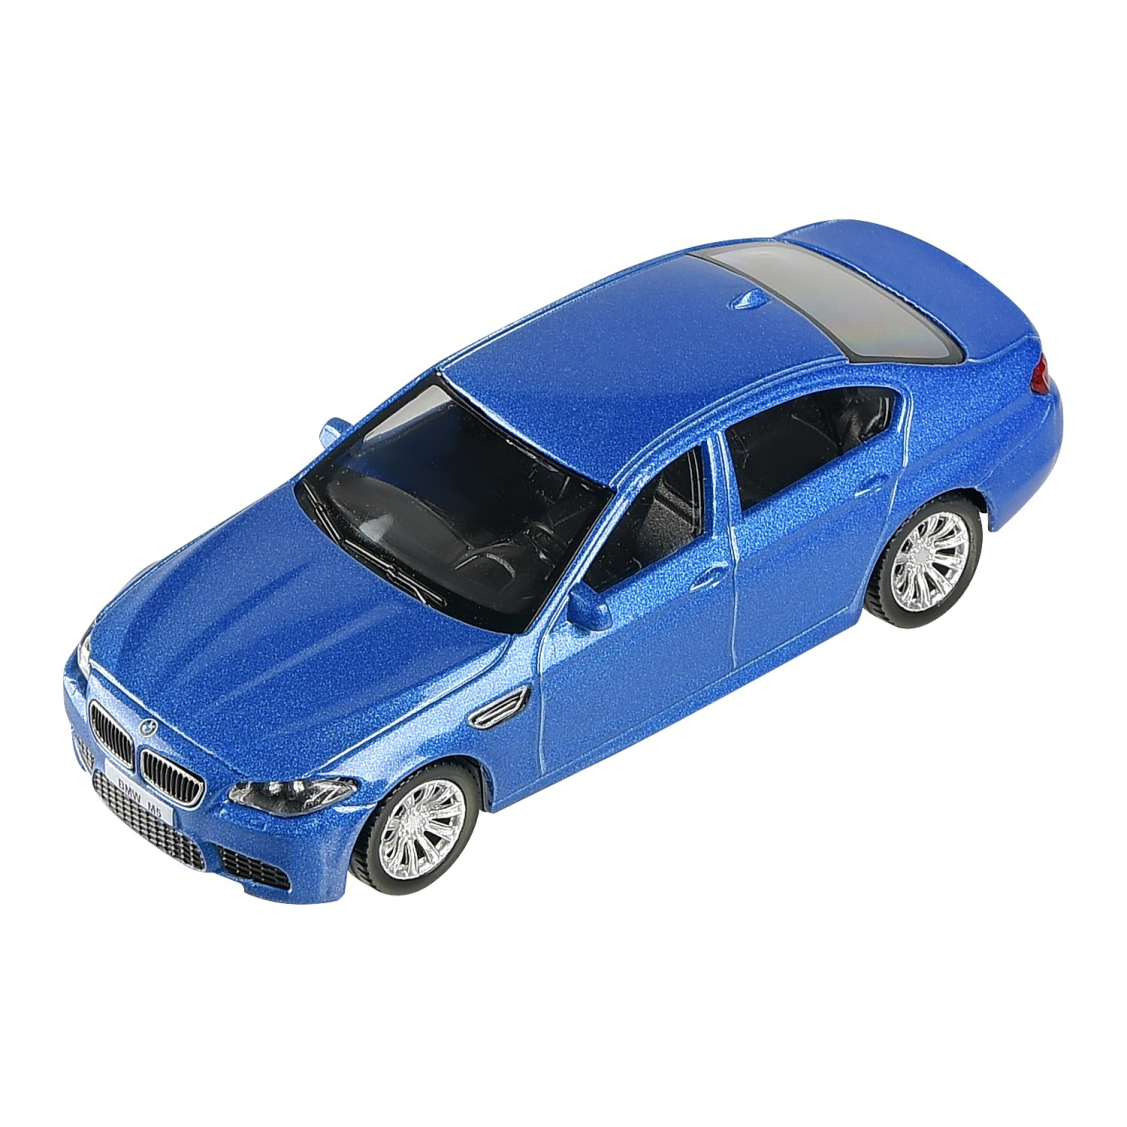 Машинка металлическая Uni-Fortune RMZ City 1:43 BMW M5 без механизмов, 2 цвета (синий/белый), 10,10х3,83х3,01 см